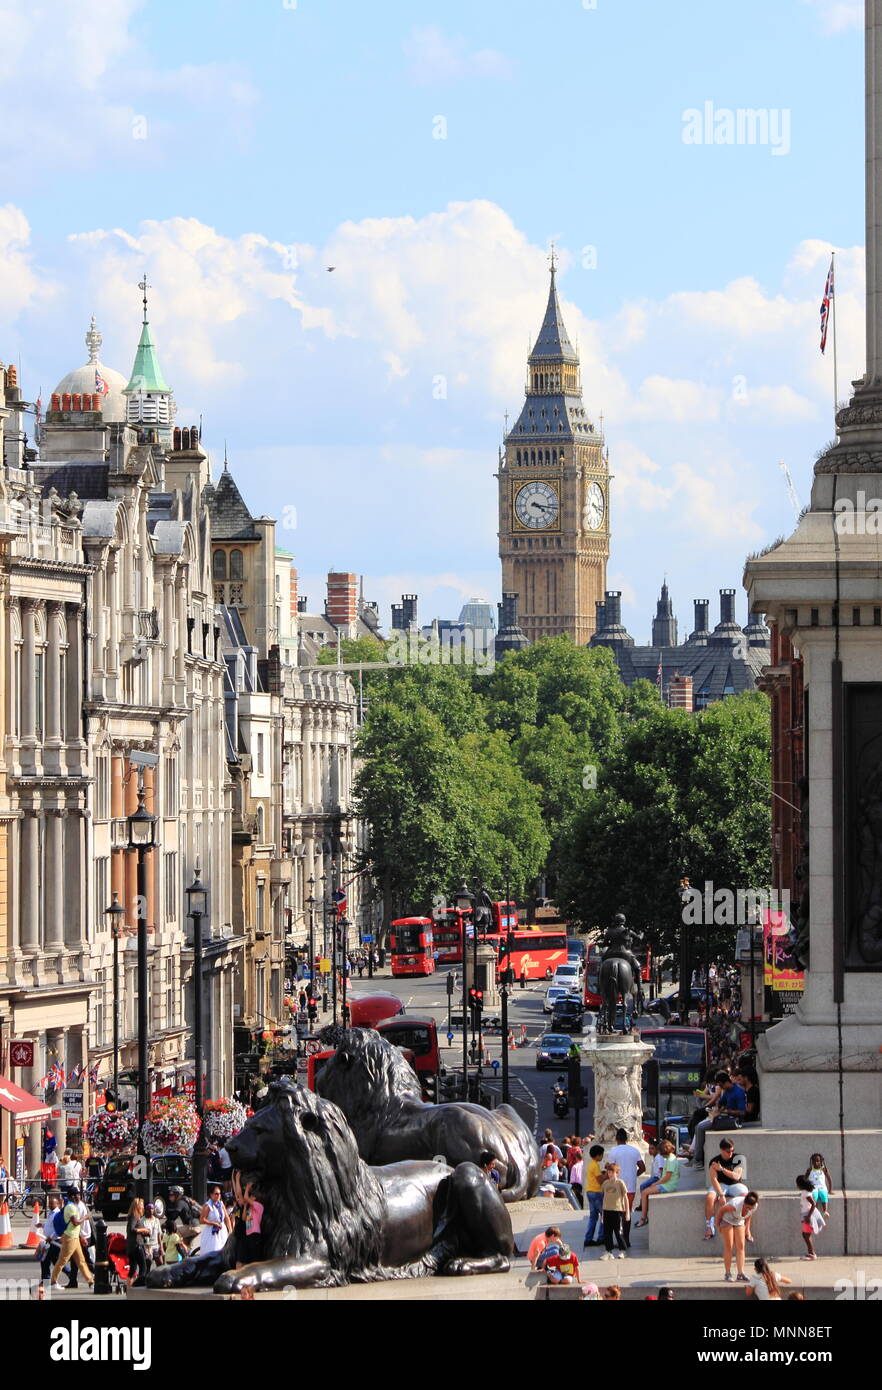 Londra - 7 agosto: Big Ben con Trafalgar Square in primo piano il 7 agosto 2014 a Londra, Regno Unito Foto Stock